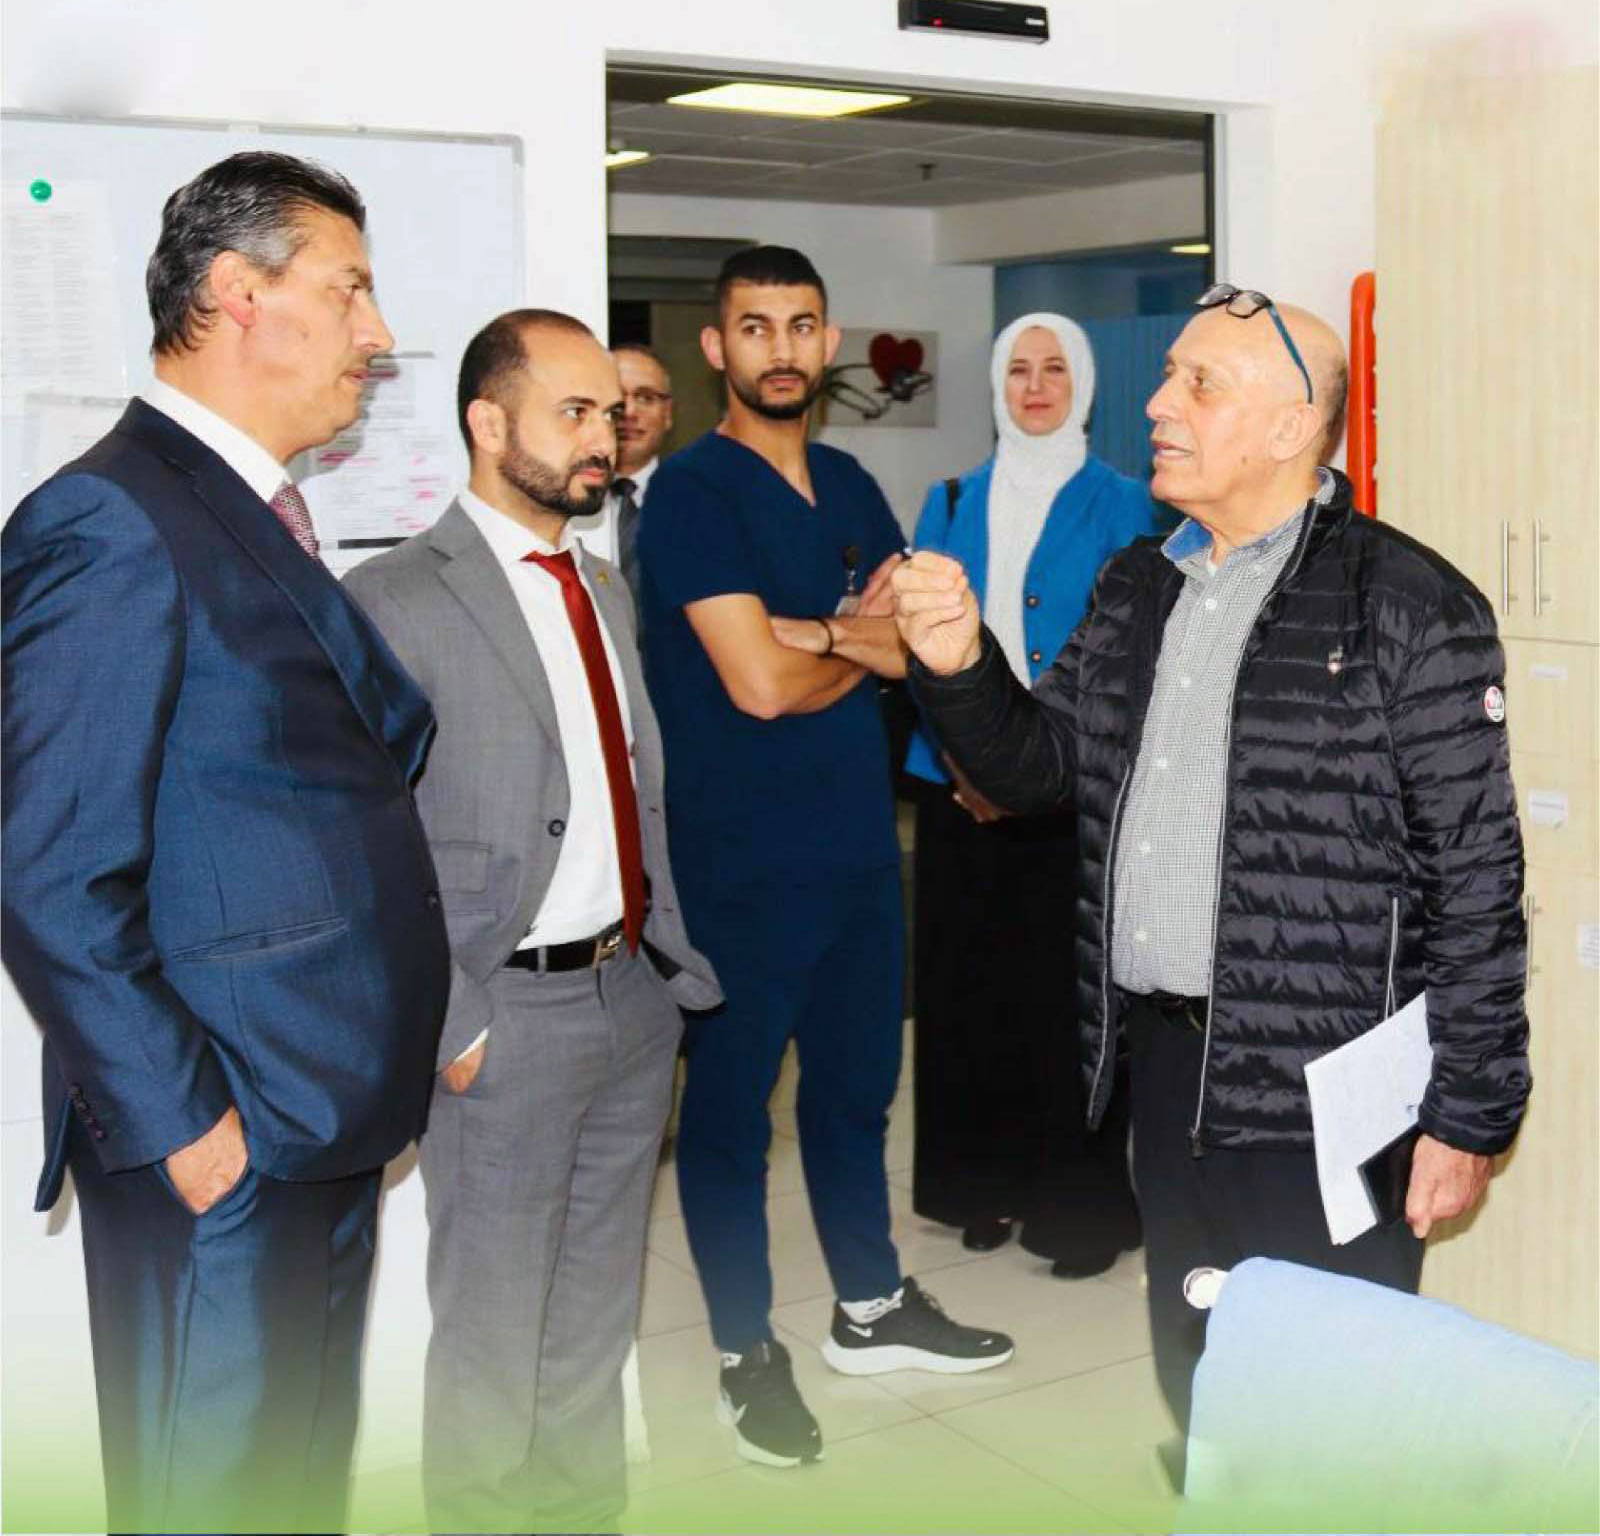 الجامعة العربية الأمريكية في زيارة لمستشفى اتش كلينيك التخصصي في رام الله لتعزيز التعاون والشراكة